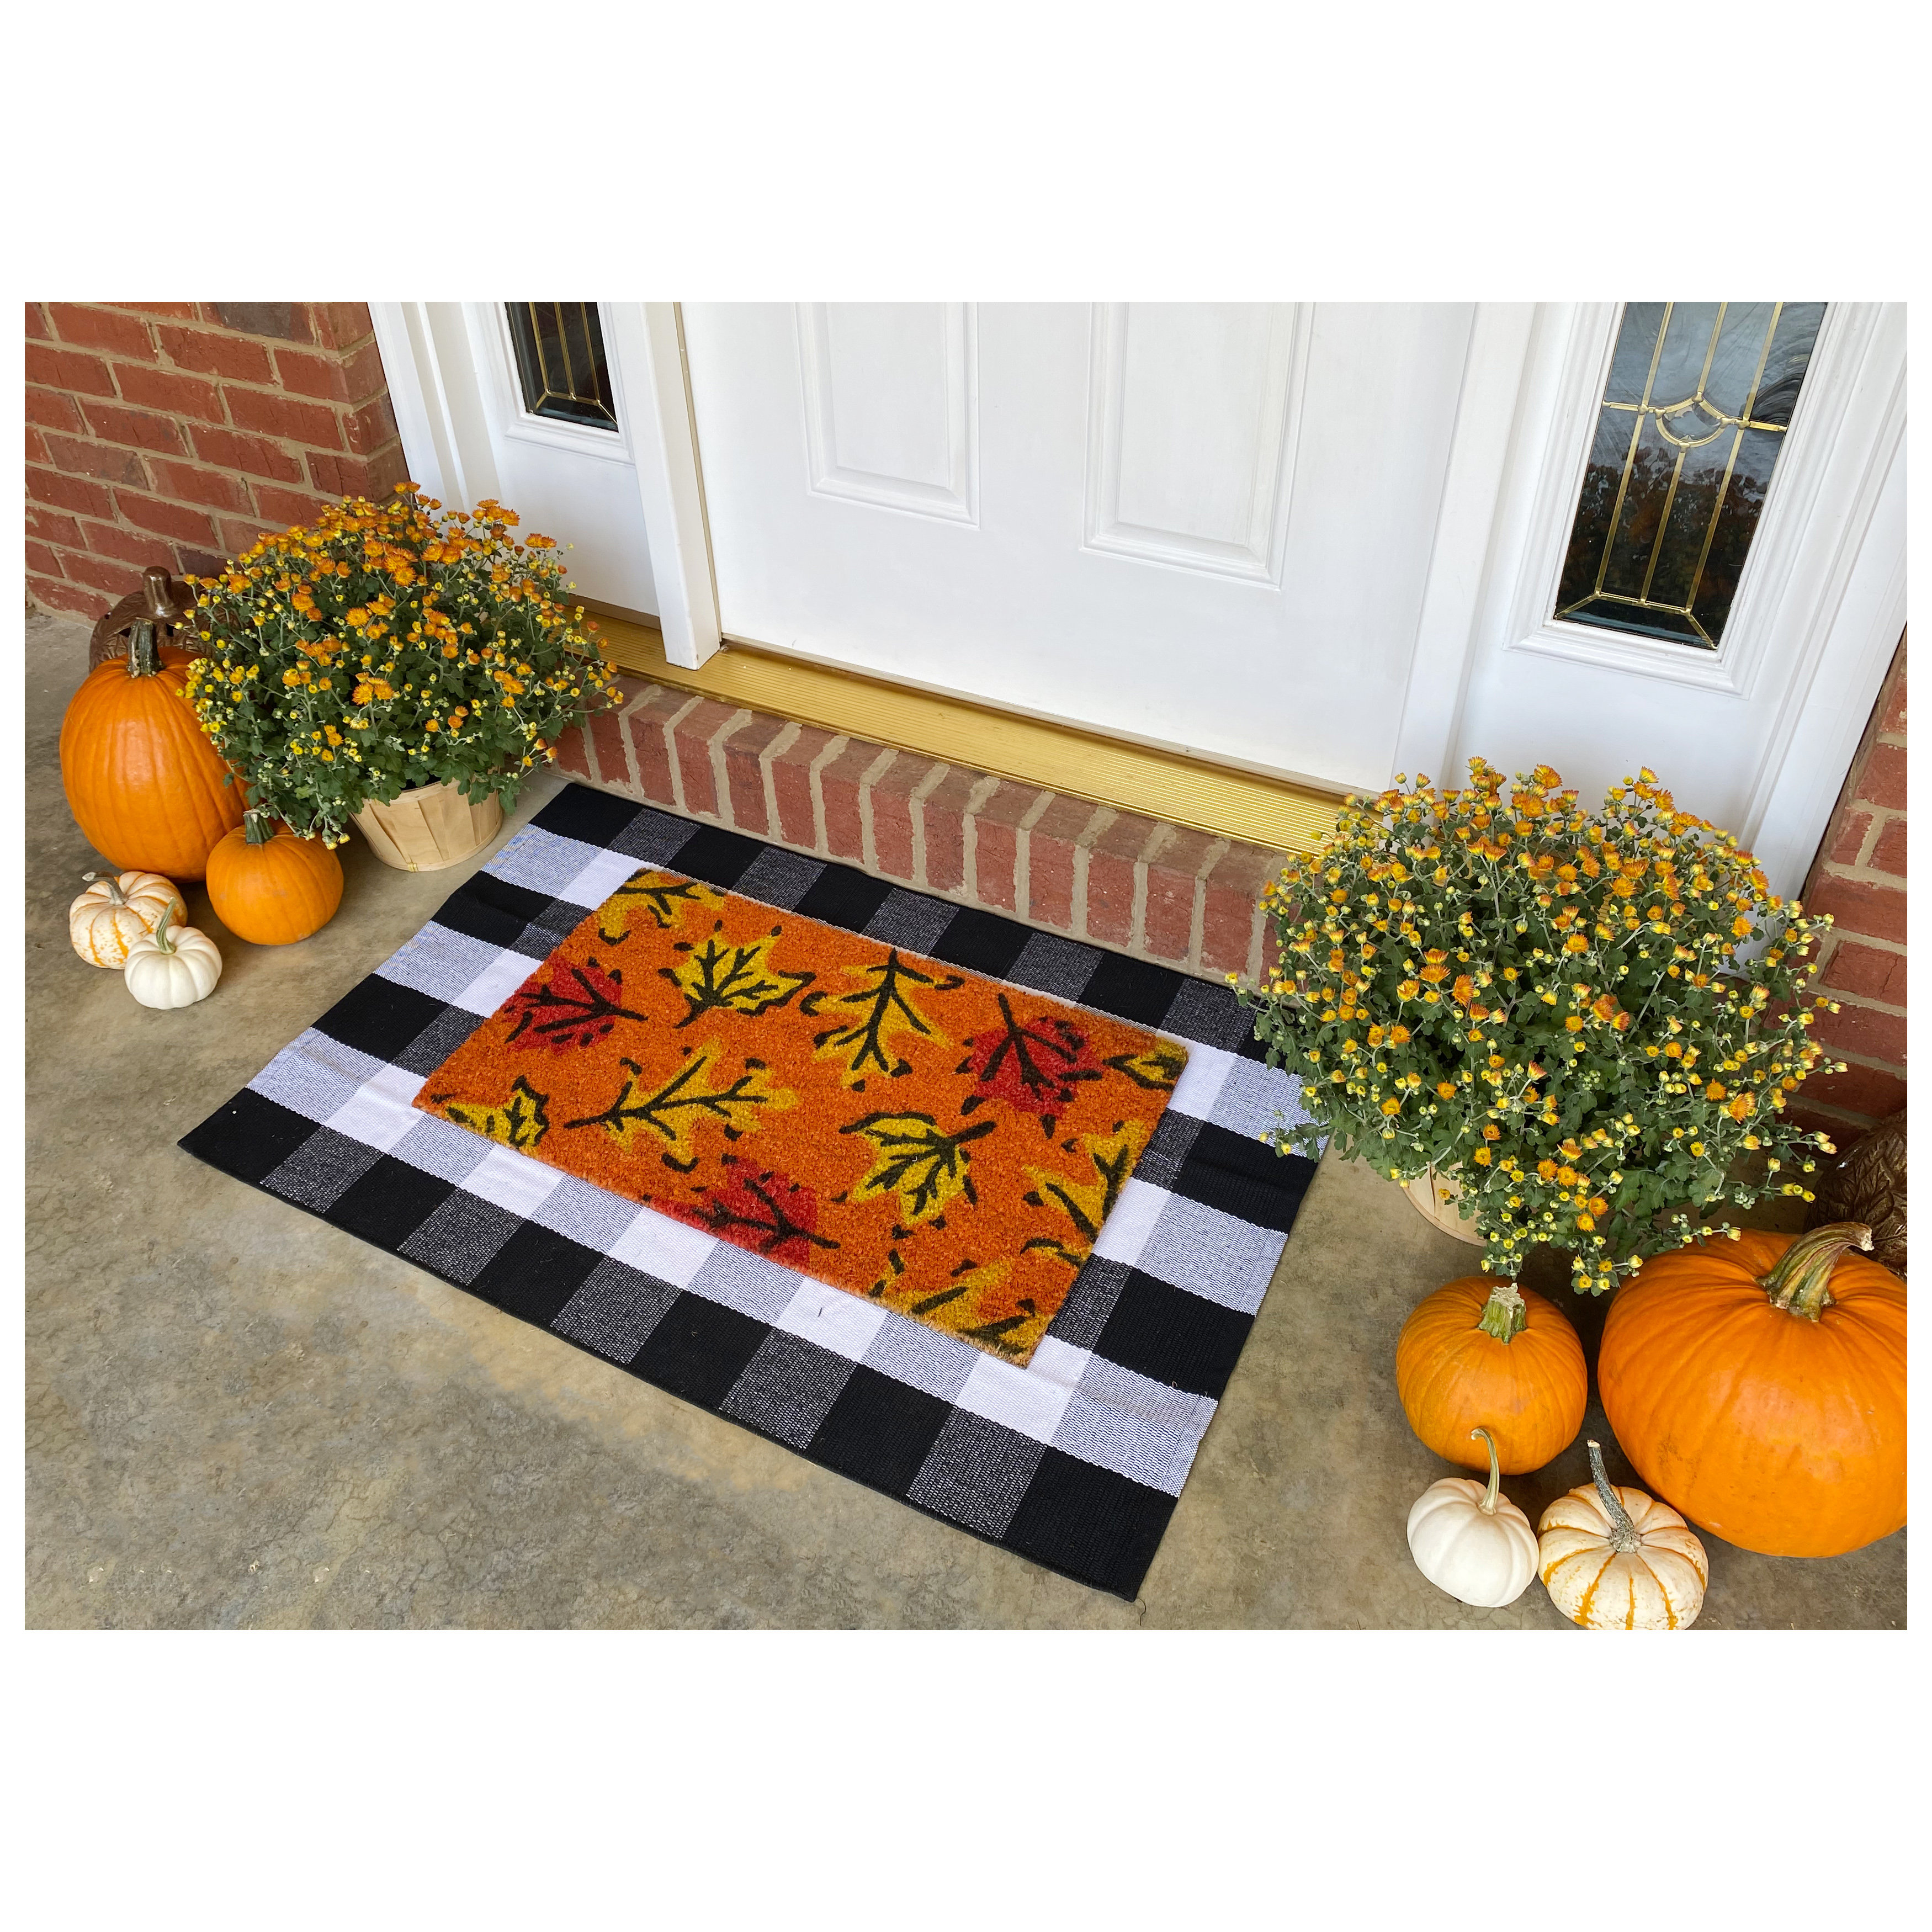 Calloway Mills Hey There Pumpkin Doormat, 24 x 36 